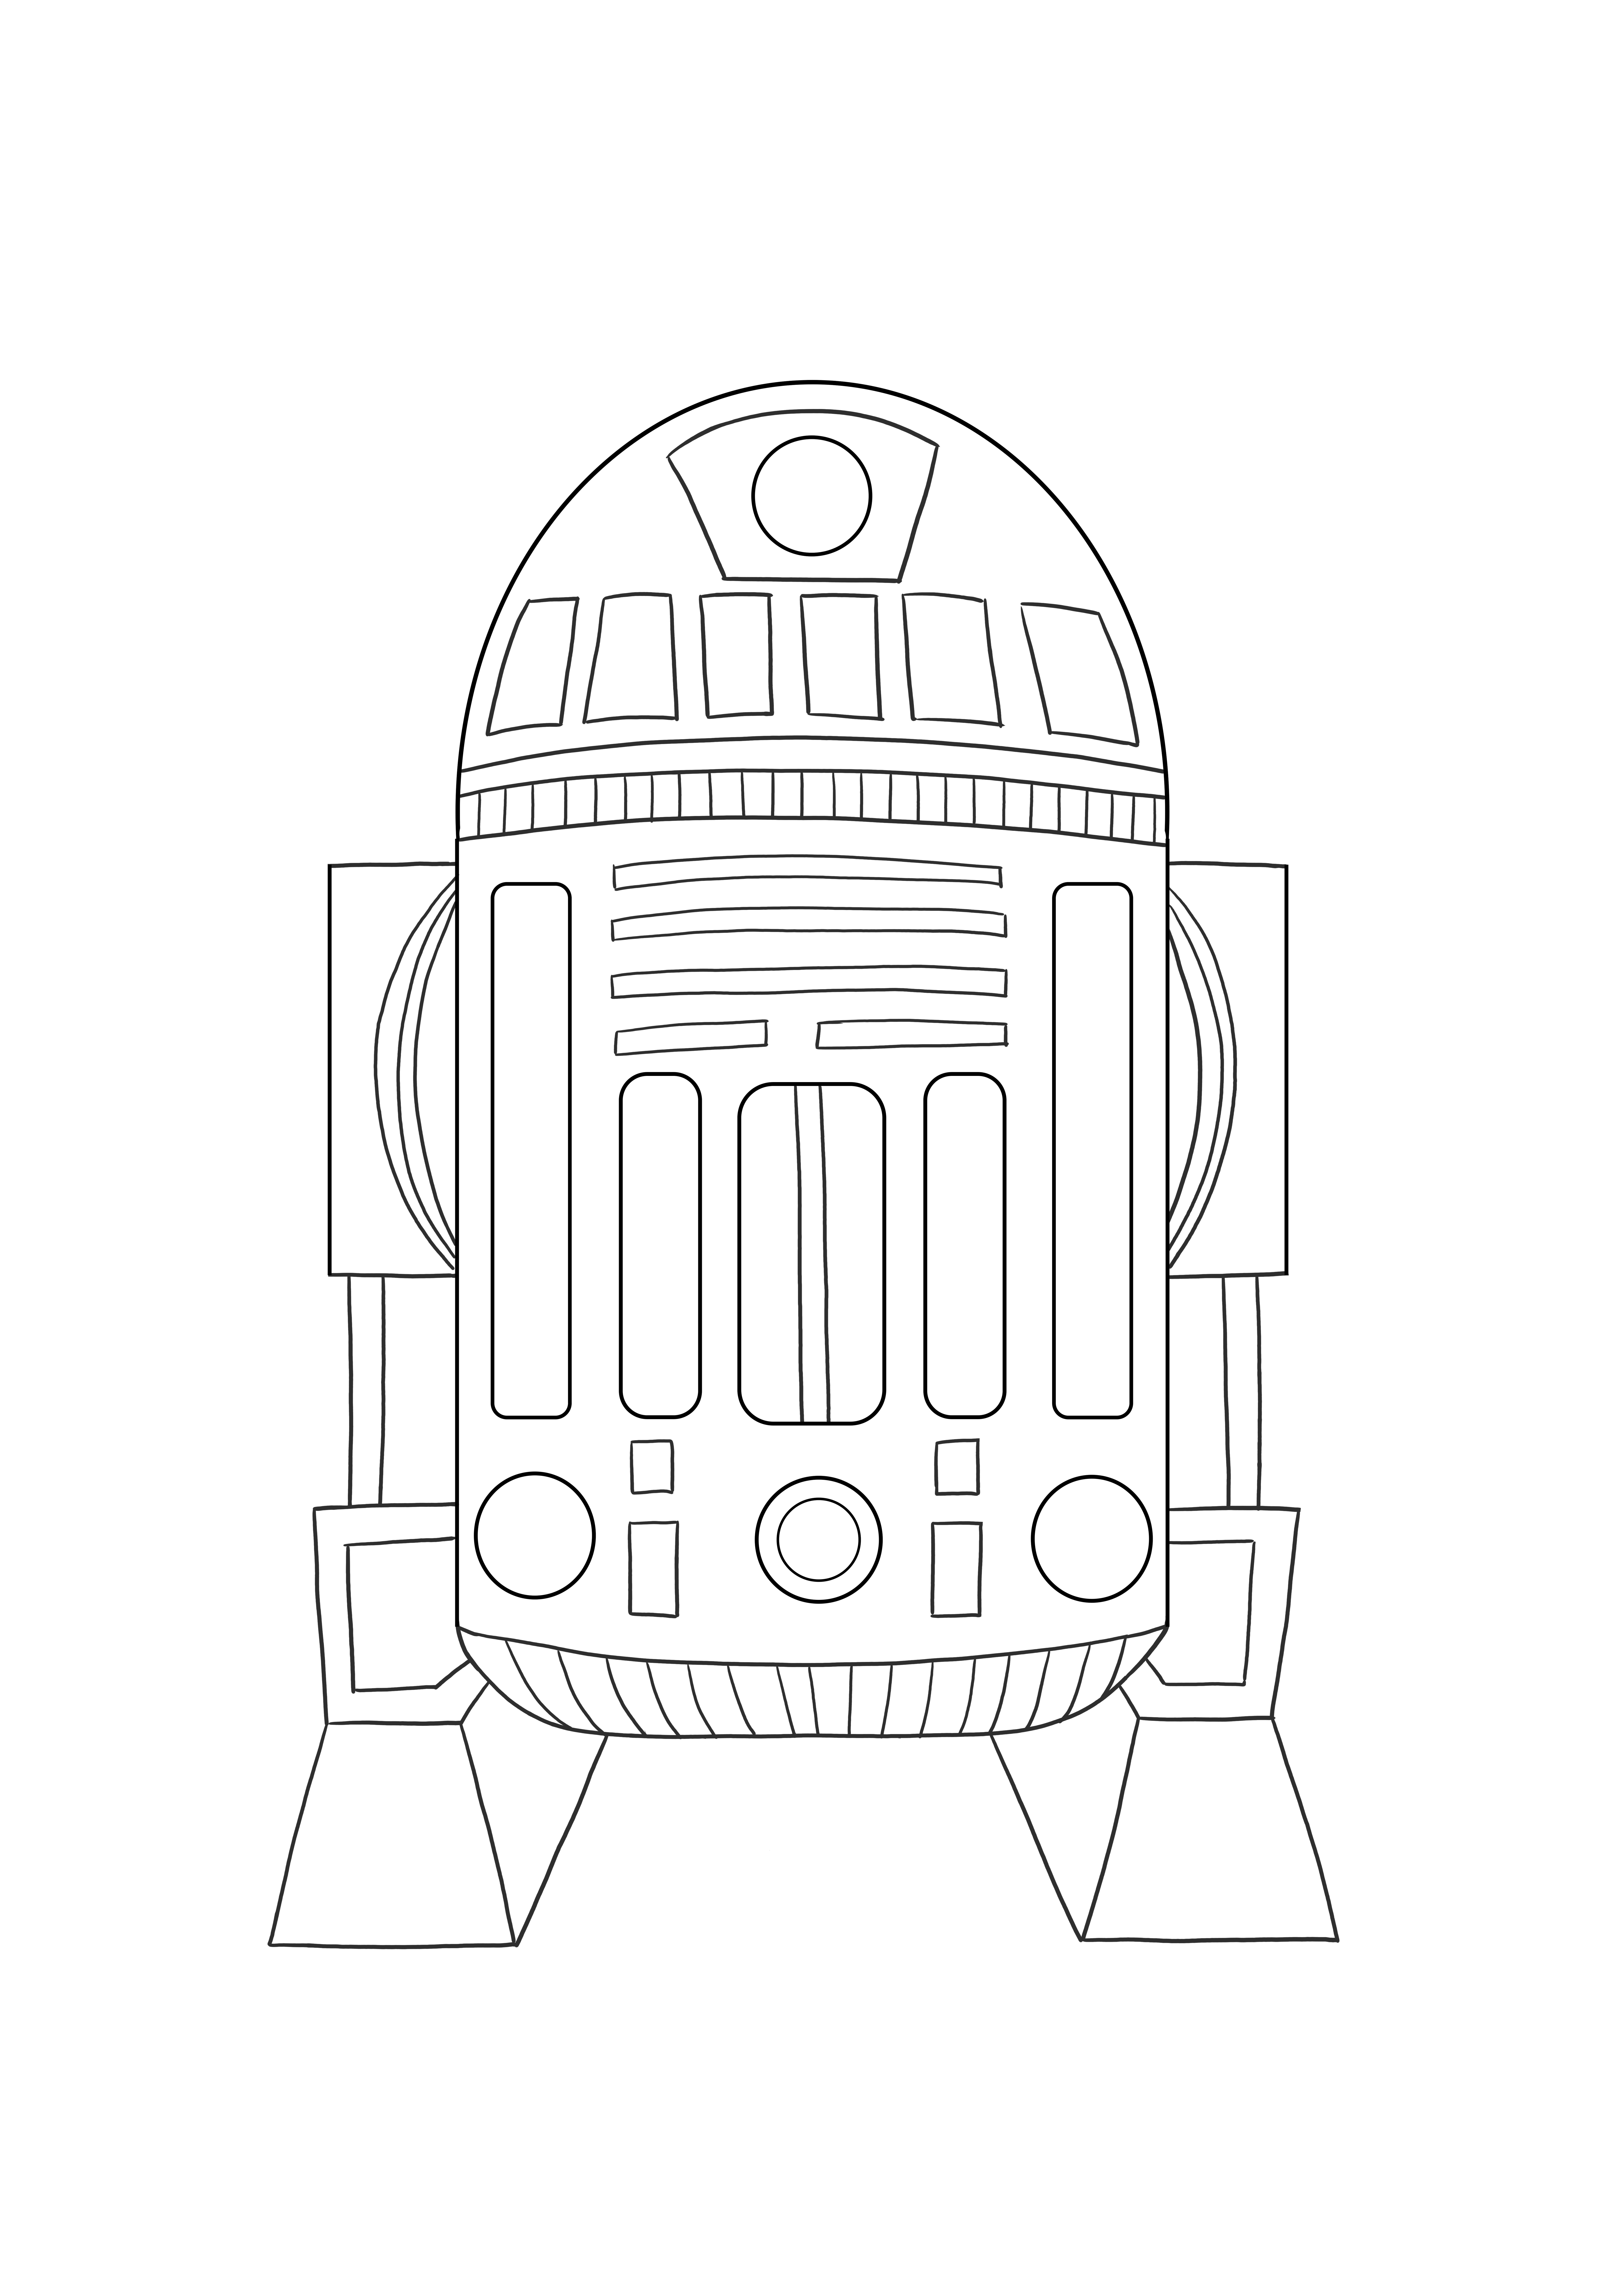 Astromed droid R2 za darmo do wydrukowania do kolorowania dla dzieci